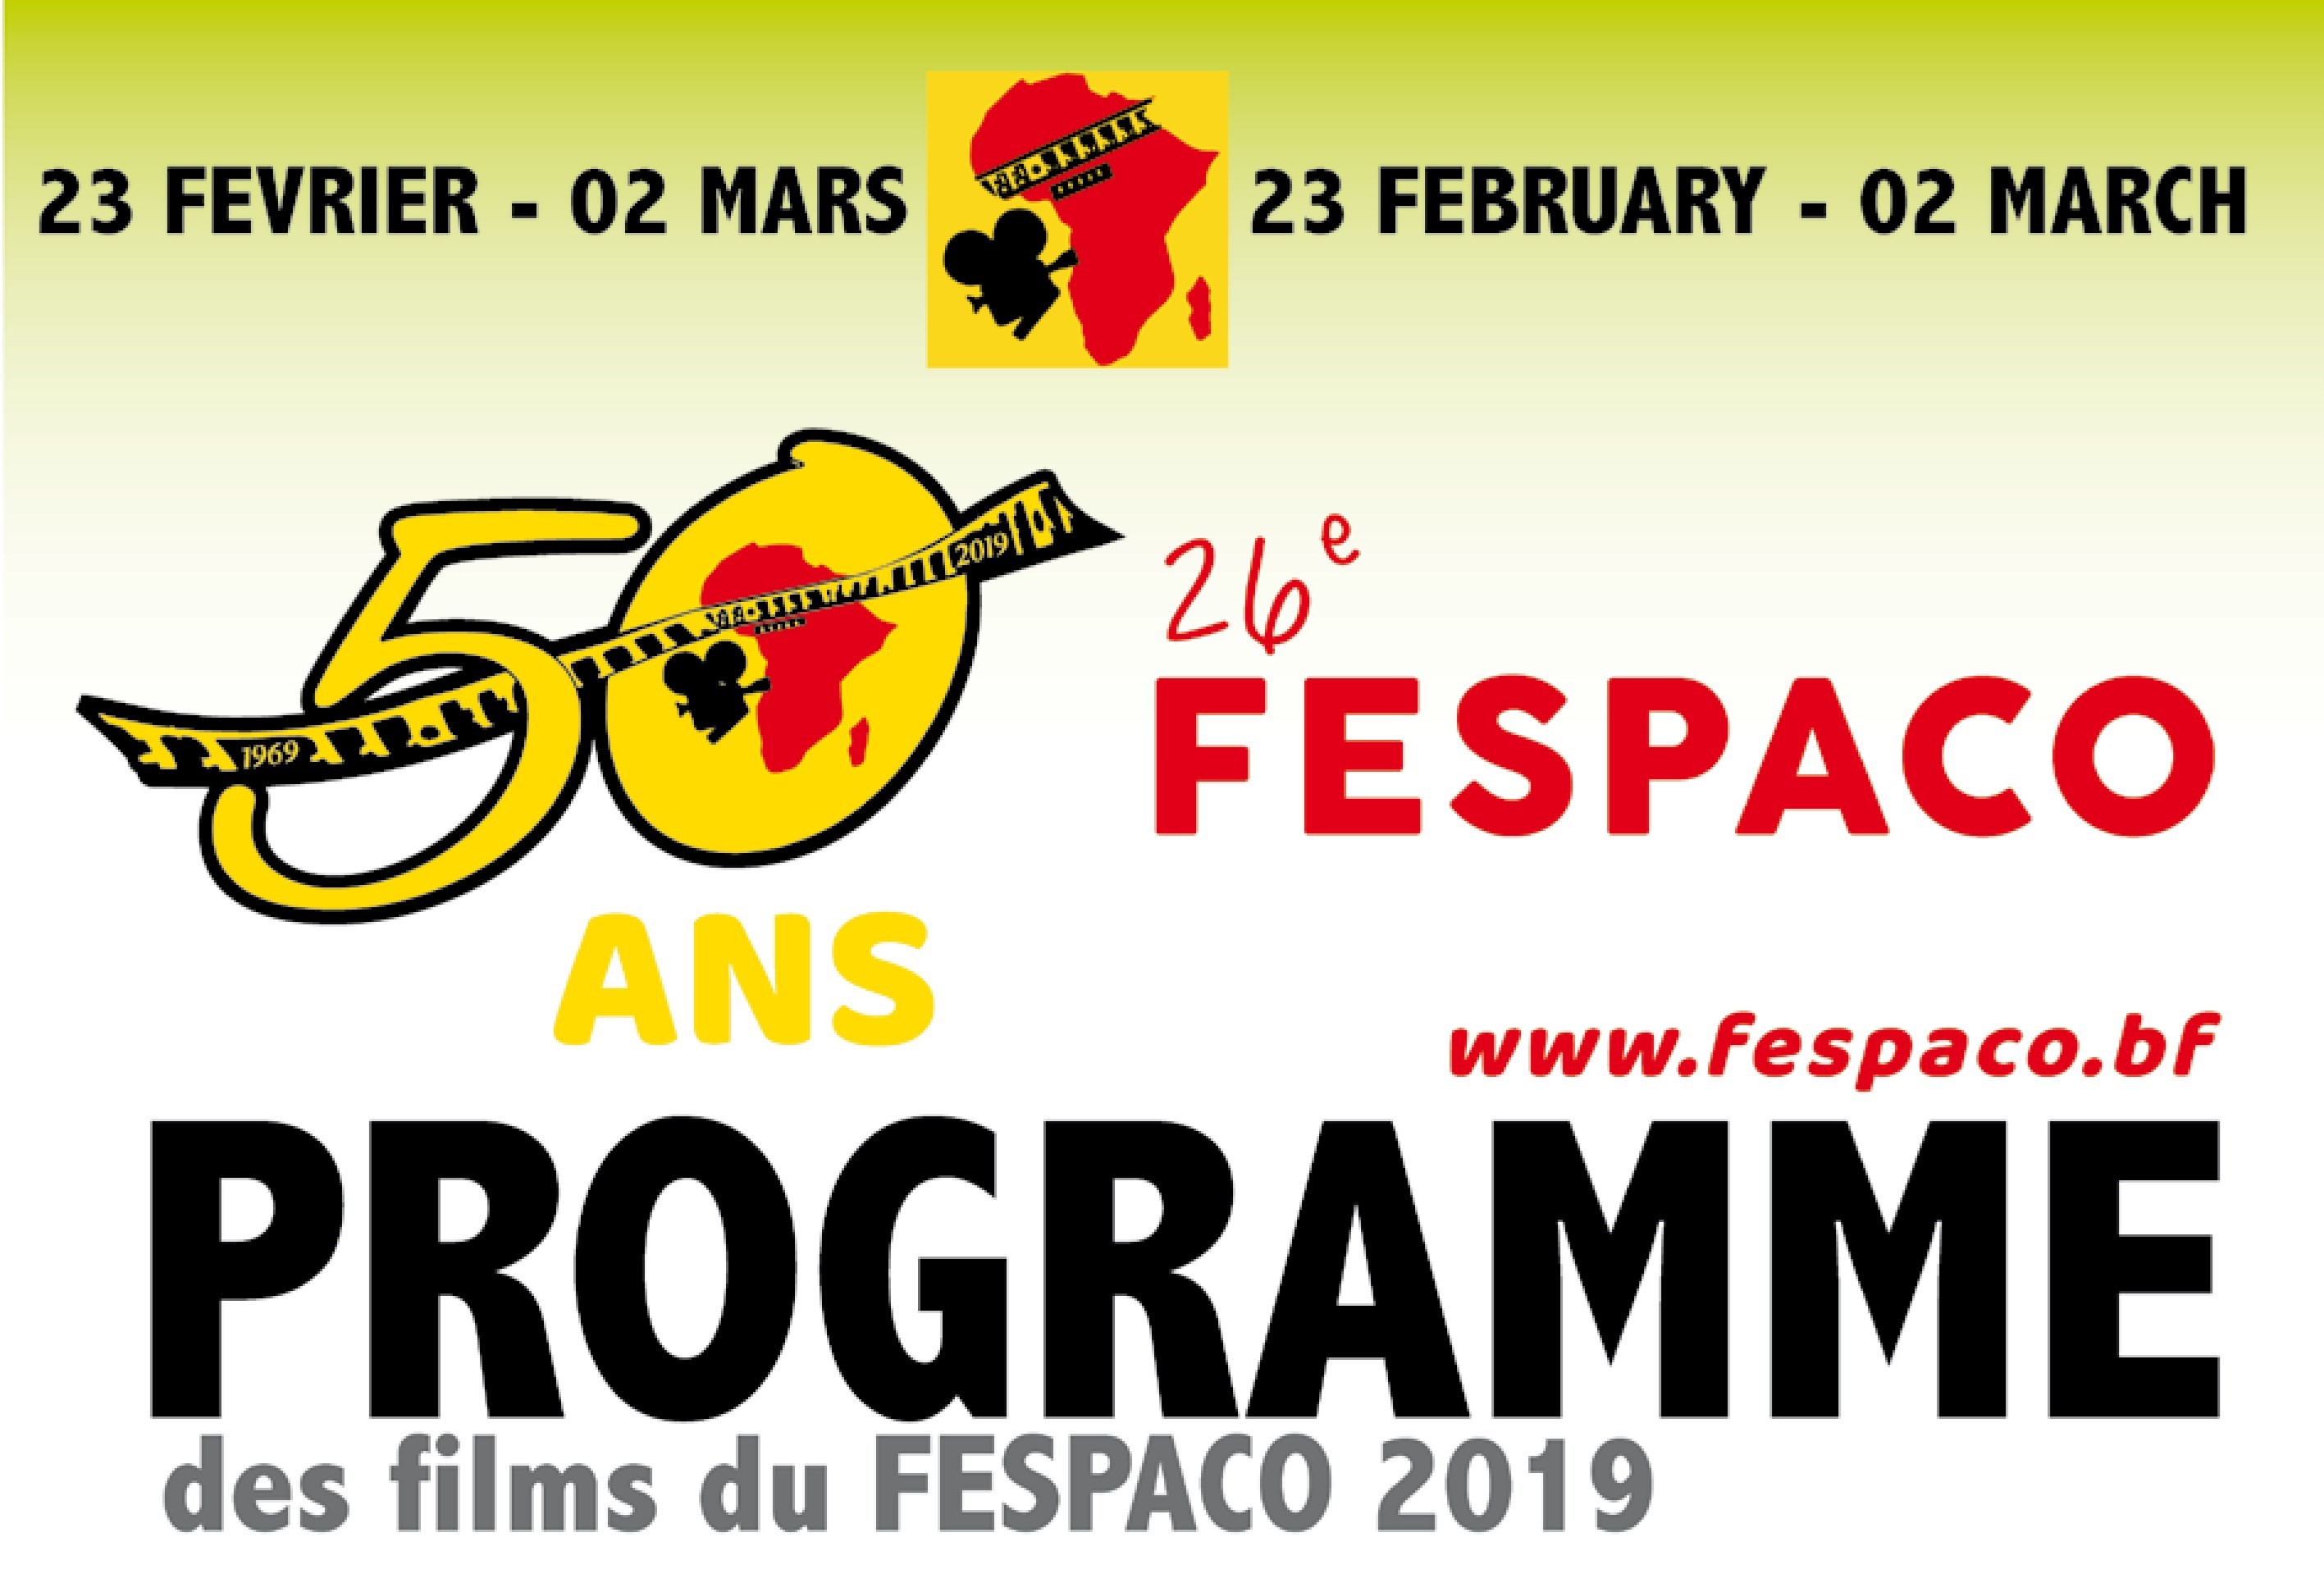 Fespaco 2019 : Programme de projection des films du Samedi 23 février 2019